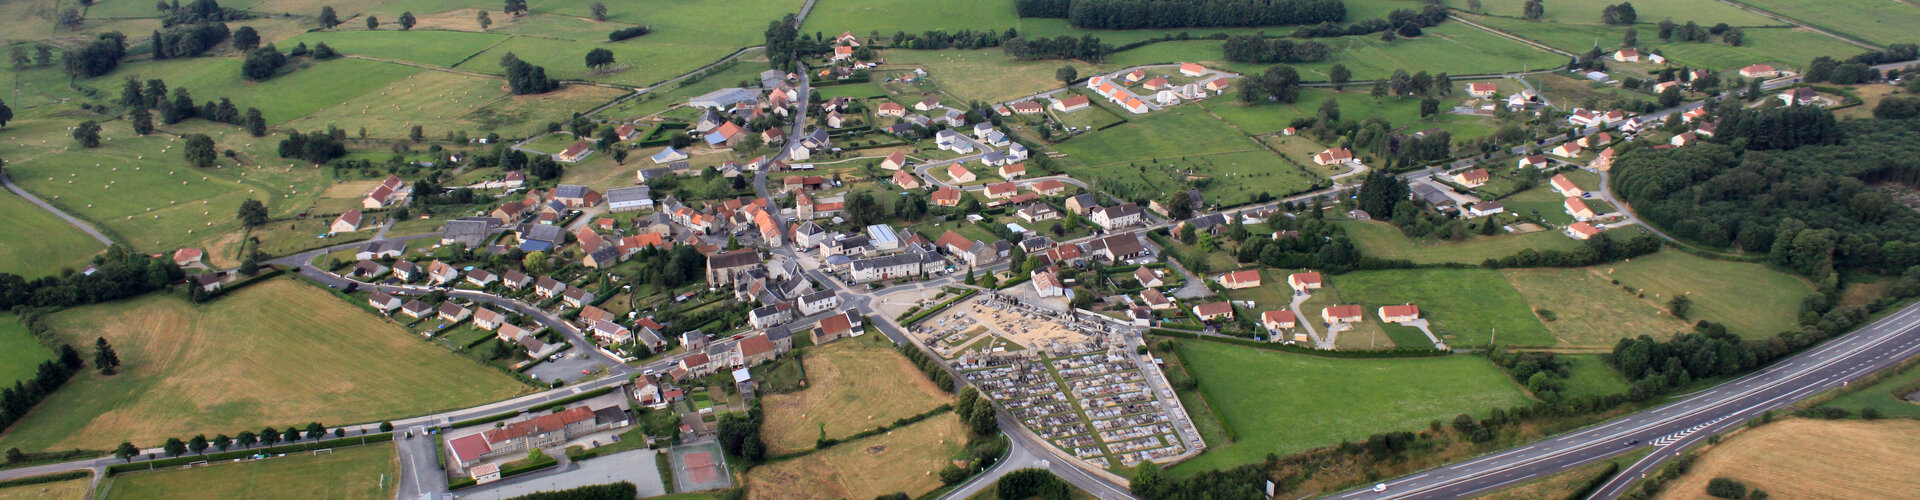 Saint-Maurice-la-Souterraine est une commune française, située dans le département de la Creuse,